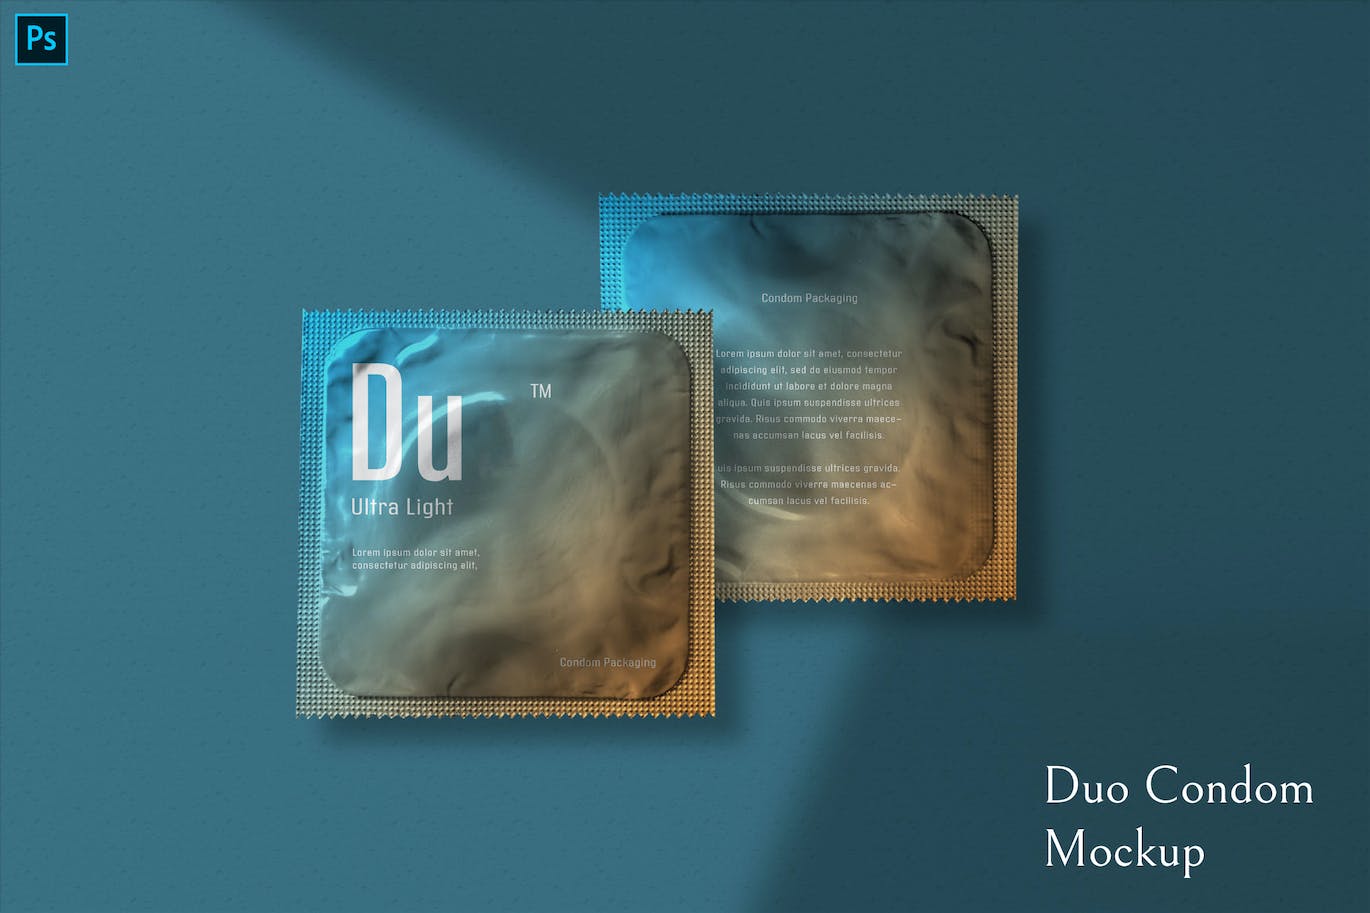 避孕安全套包装设计样机图psd模板 Duo Condom Mockup 样机素材 第1张